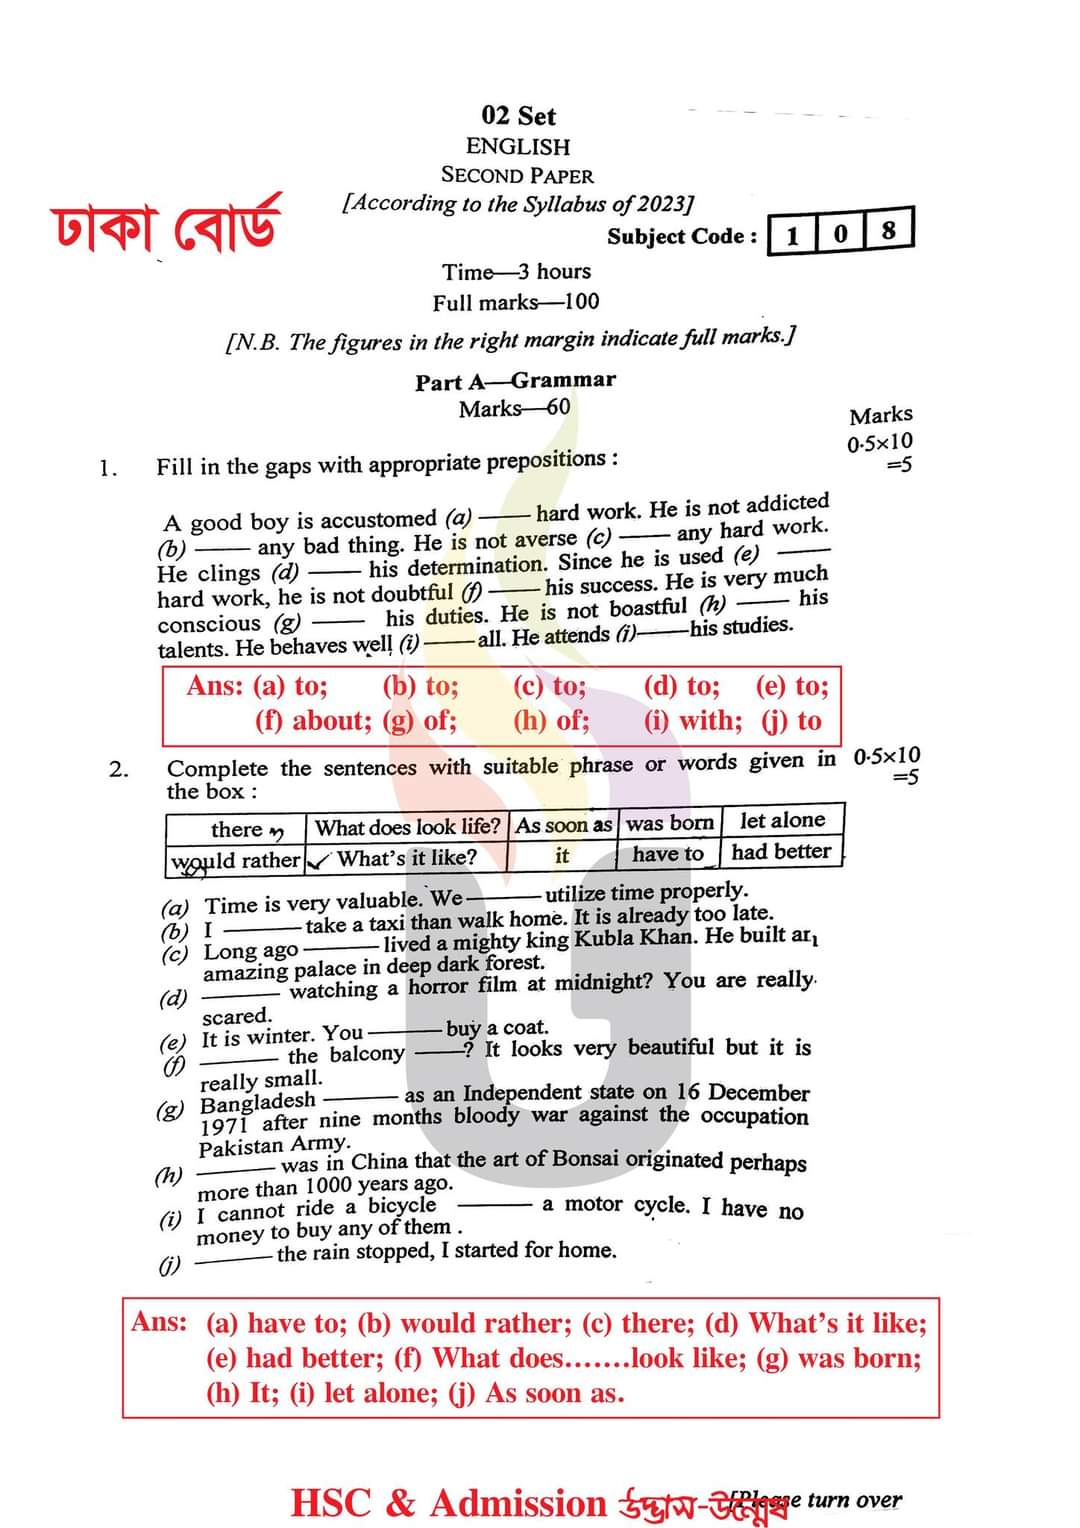 ঢাকা বোর্ড এইচএসসি ইংরেজি ২য় পএ বহুনির্বাচনি প্রশ্ন সমাধান ২০২৩ | এইচএসসি ইংরেজি ২য় পএ প্রশ্ন সমাধান ২০২৩ | Dhaka broad hsc English 2nd paper exam Mcq Solution 2023